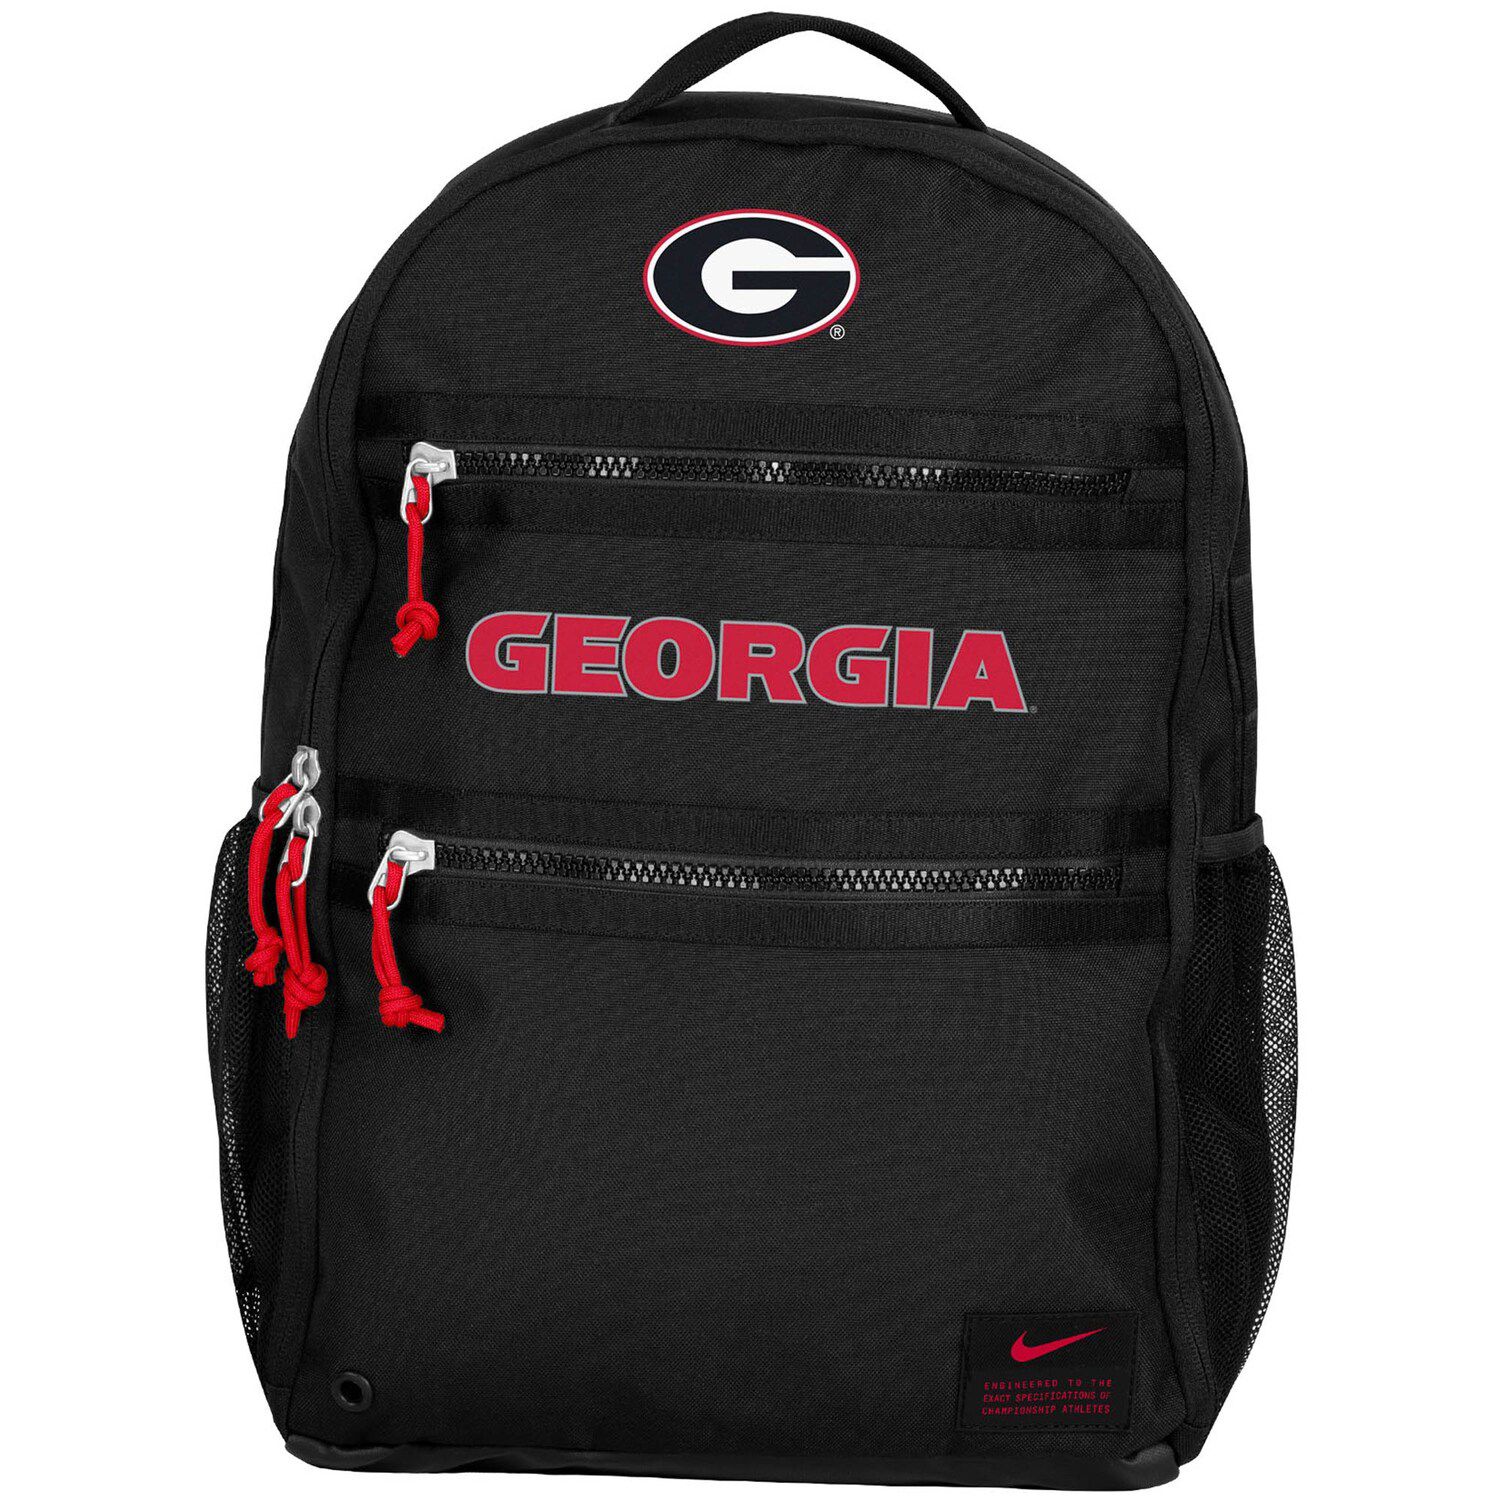 nike georgia backpack